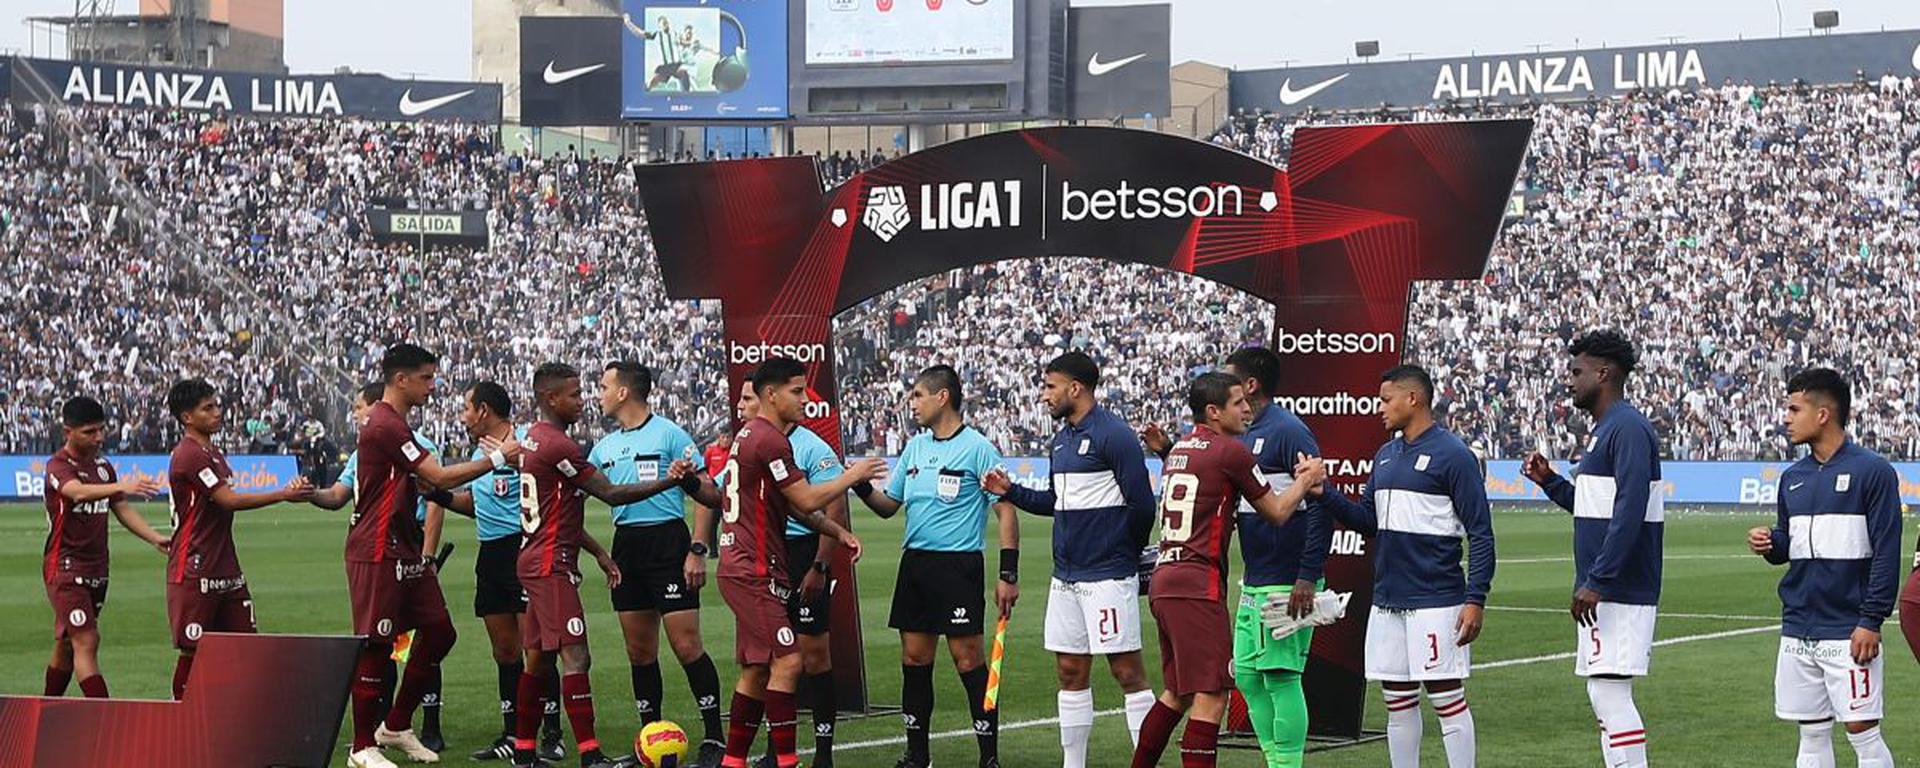 La Liga 1 por DirecTV: ¿Será la única señal que transmita el fútbol peruano?